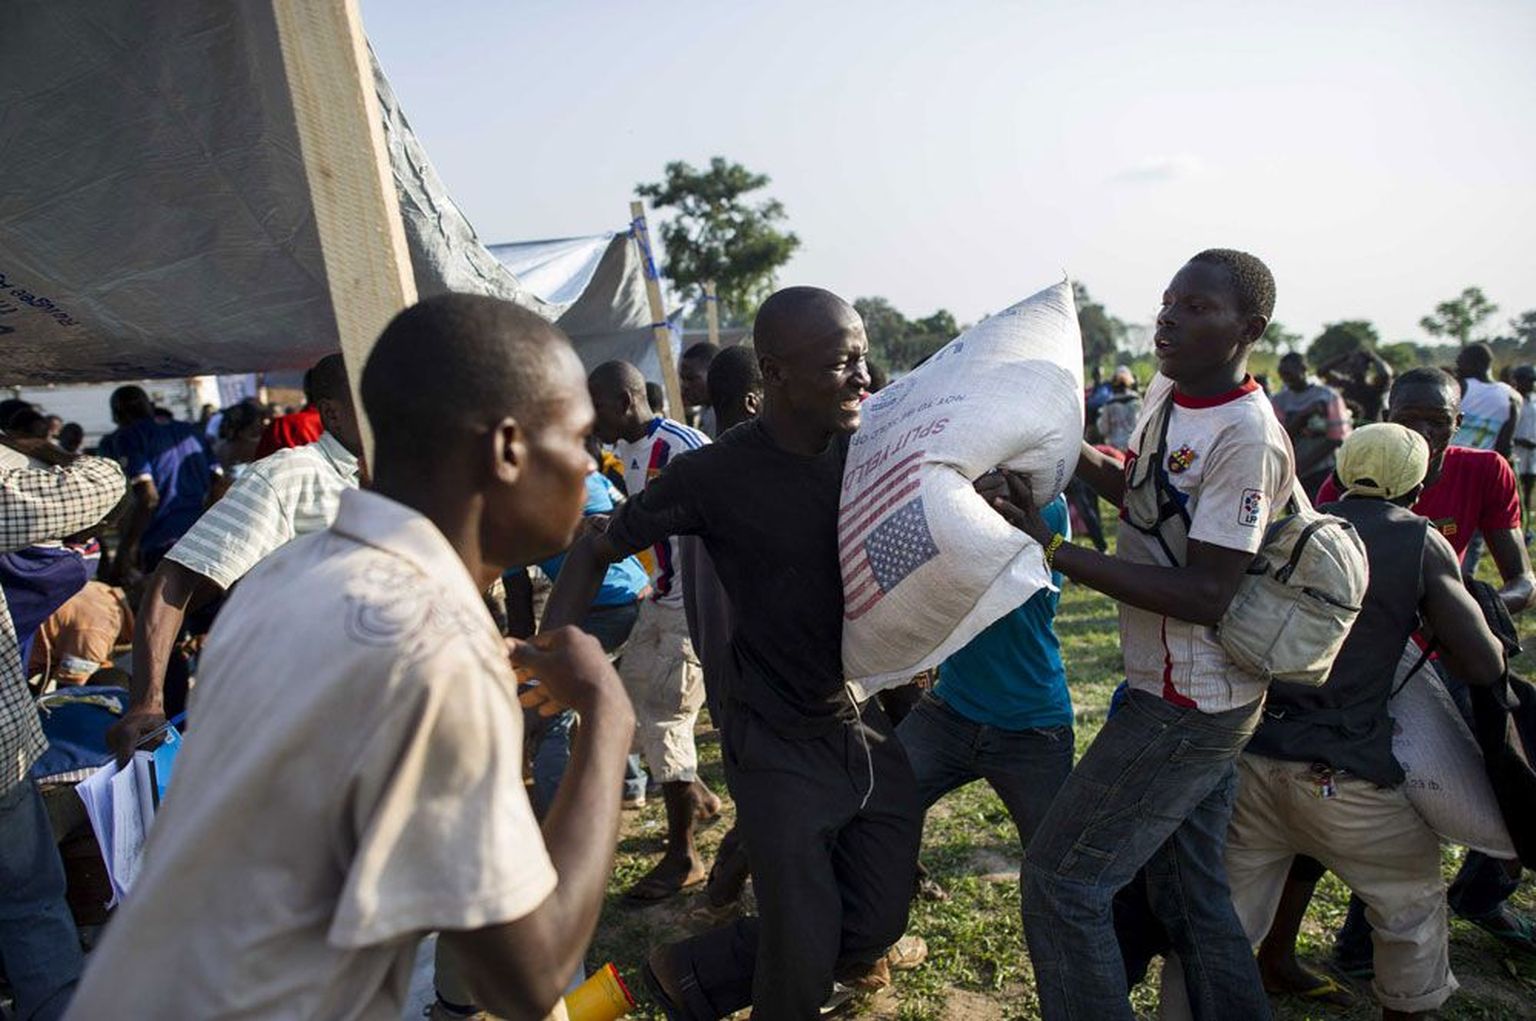 Lisaks moslemite ja kristlaste kokkupõrgetele peavad Kesk-Aafrika Vabariigis praegu enda eest võitlema ka vägivalla eest põgenenud inimesed, keda kimbutab toidunappus. Pildil abi jagamine eile Bangui lähedal asuvas pagulaslaagris.